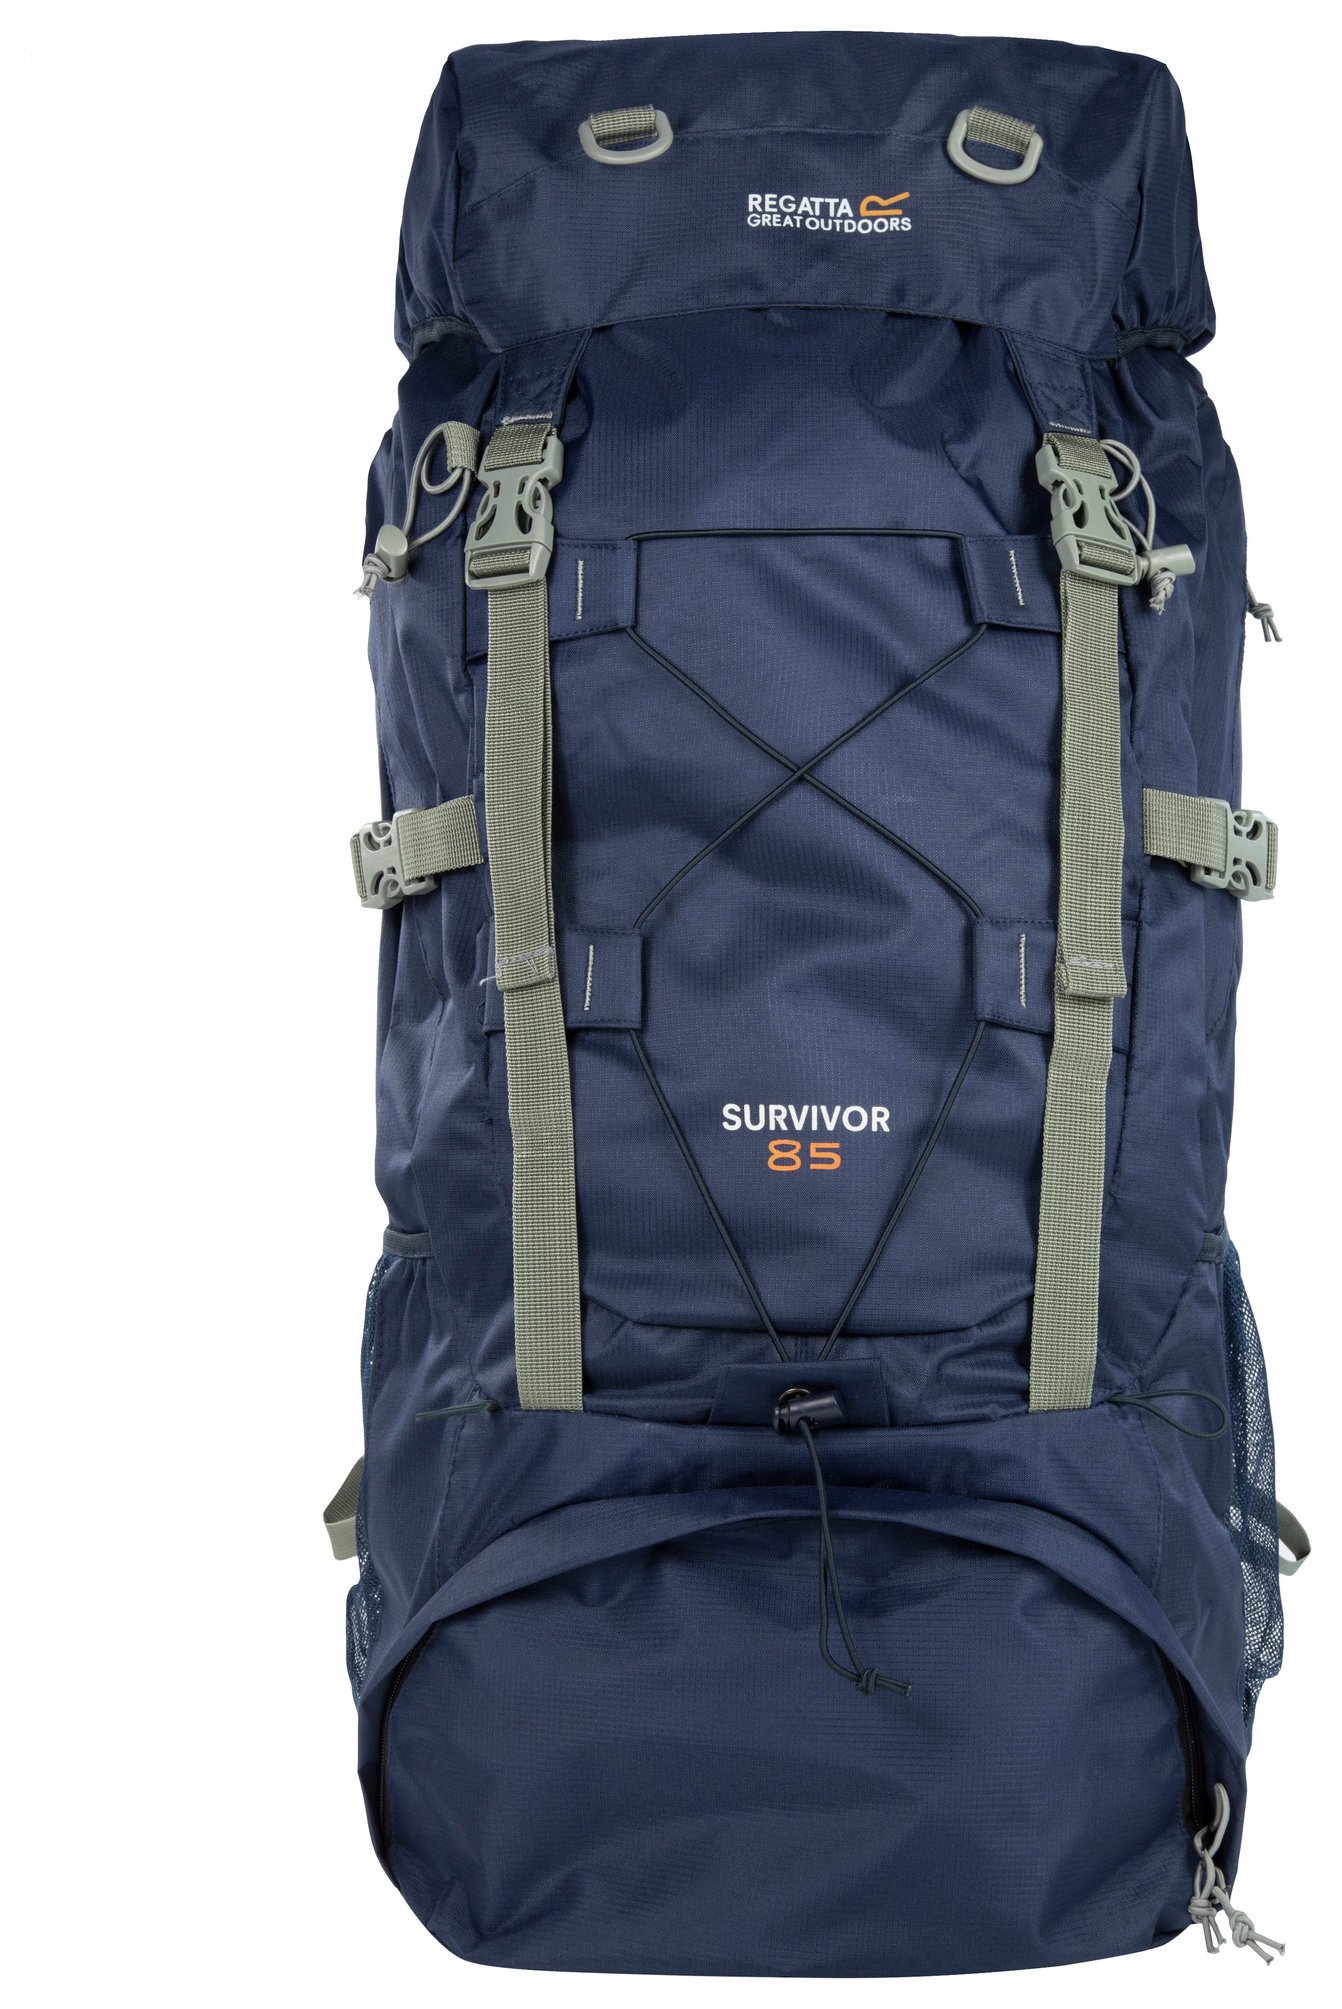 Regatta Survivor III 85L Backpack - Navy Blue